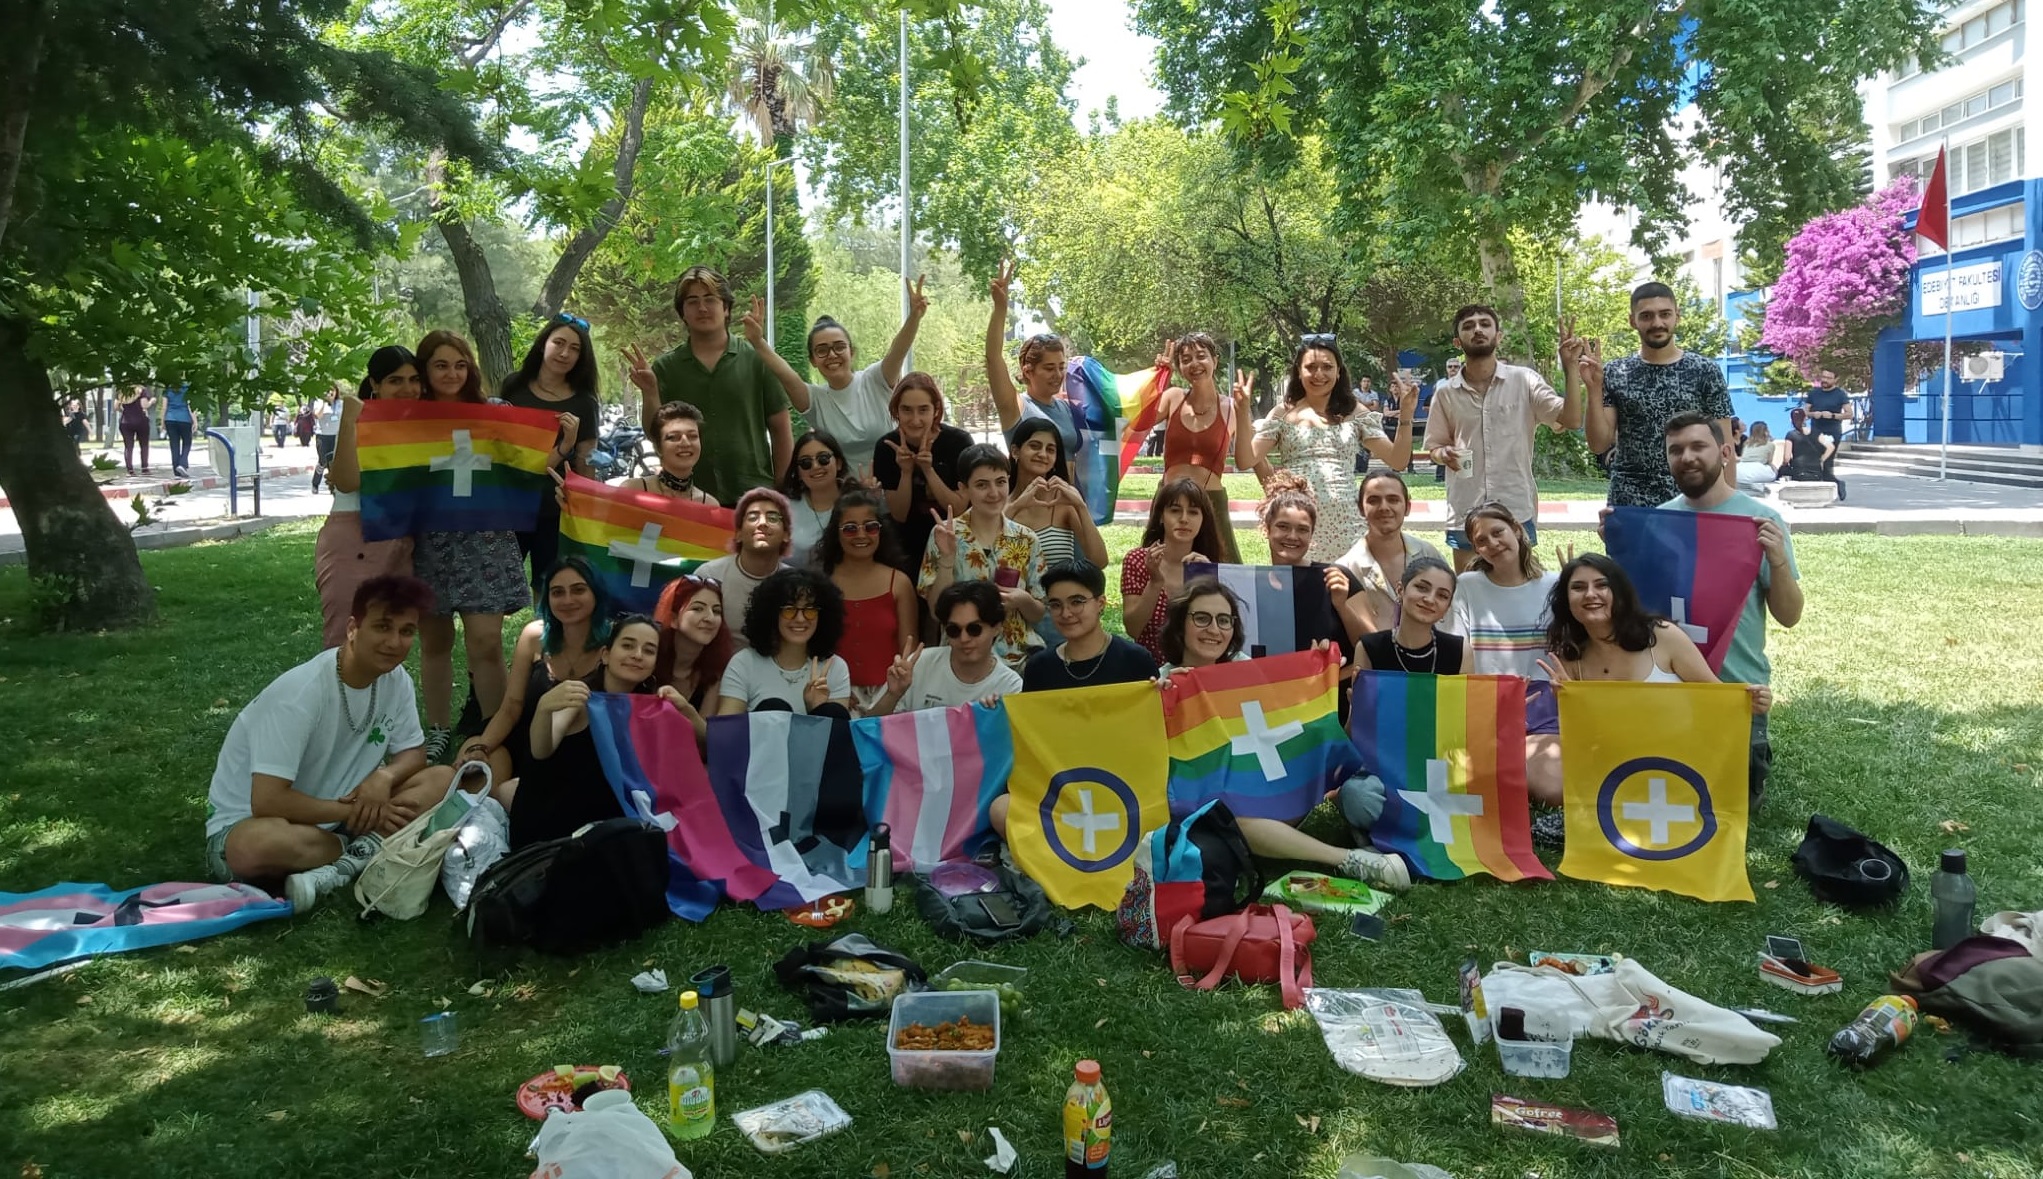 Ege Üniversitesi 2 Haziran’da Onur Pikniği’nde buluşuyor | Kaos GL - LGBTİ+ Haber Portalı Haber